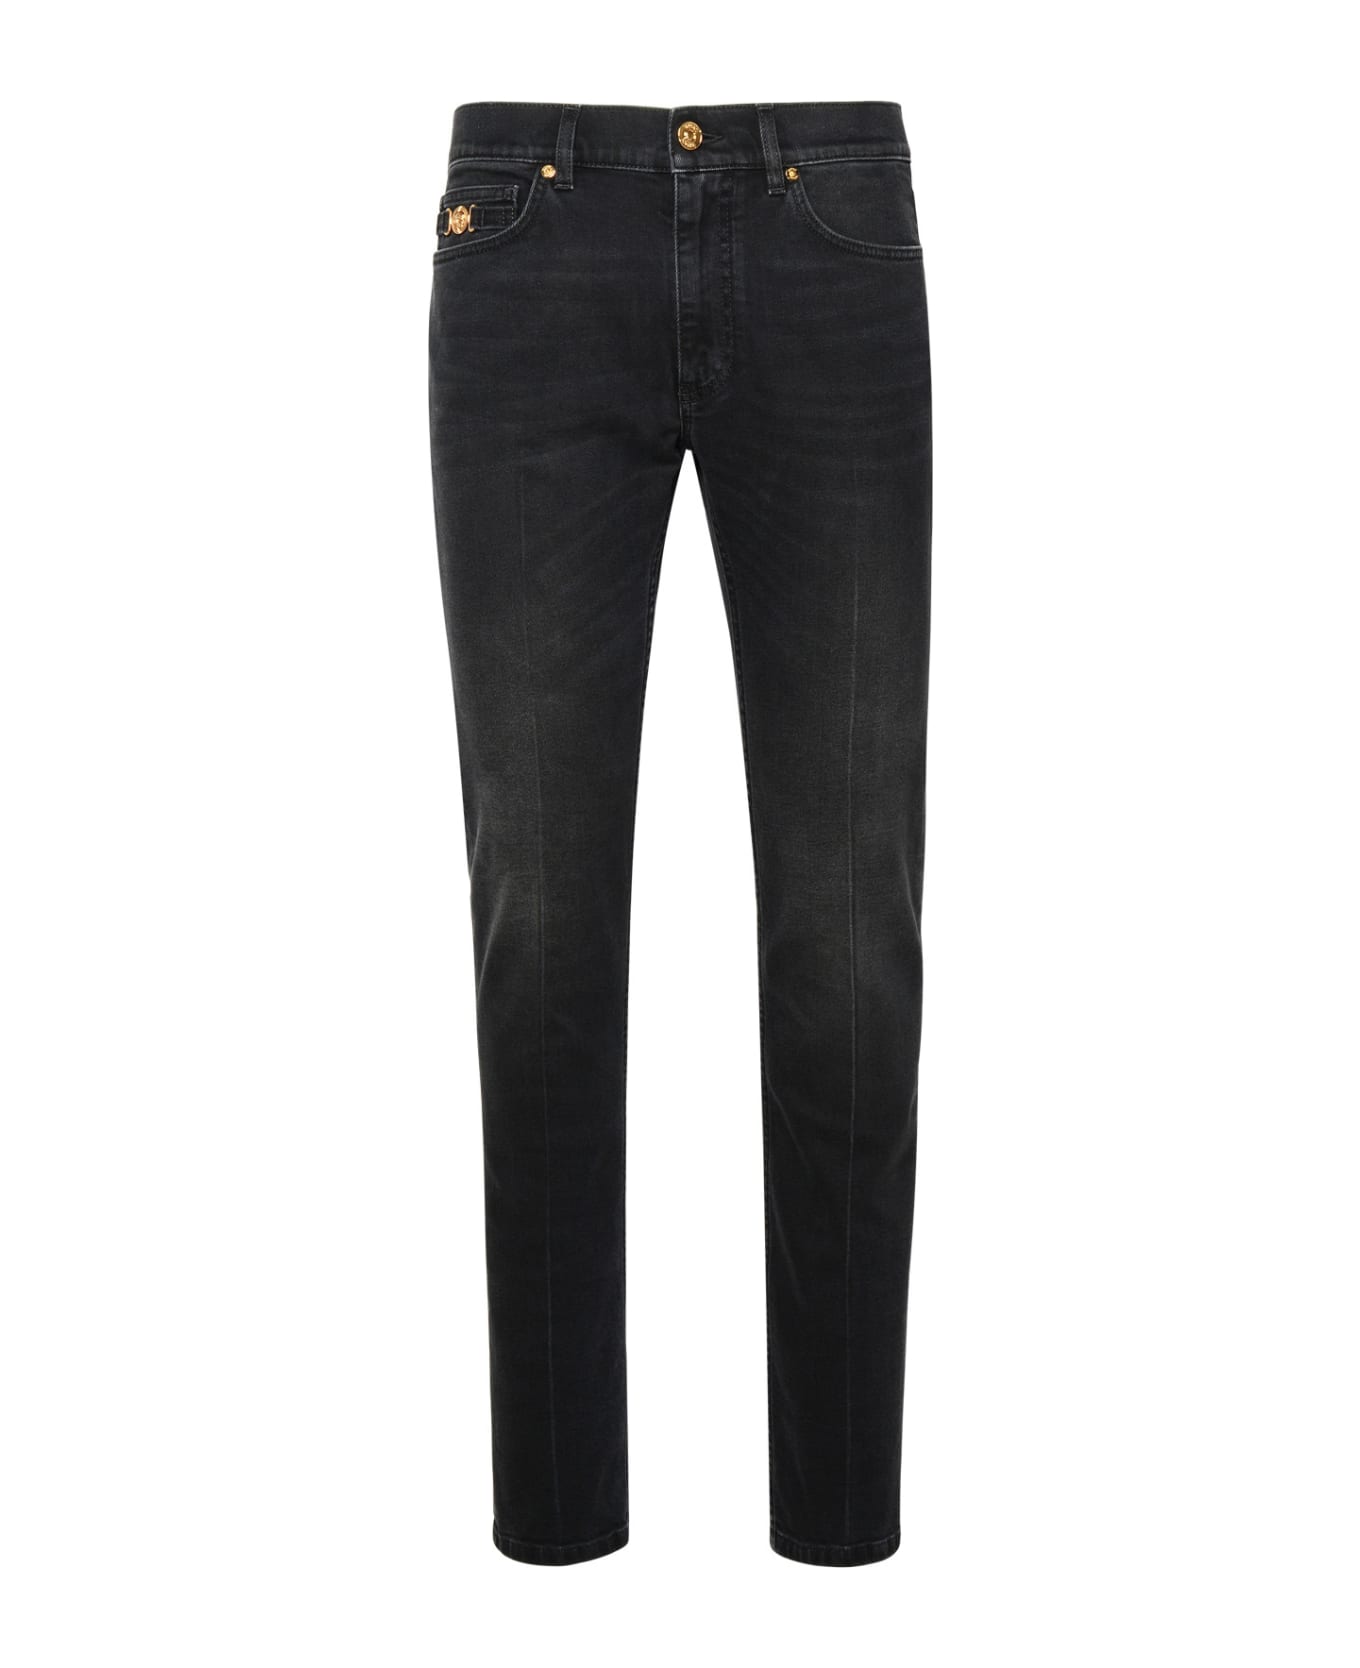 Versace Black Cotton Jeans - Black